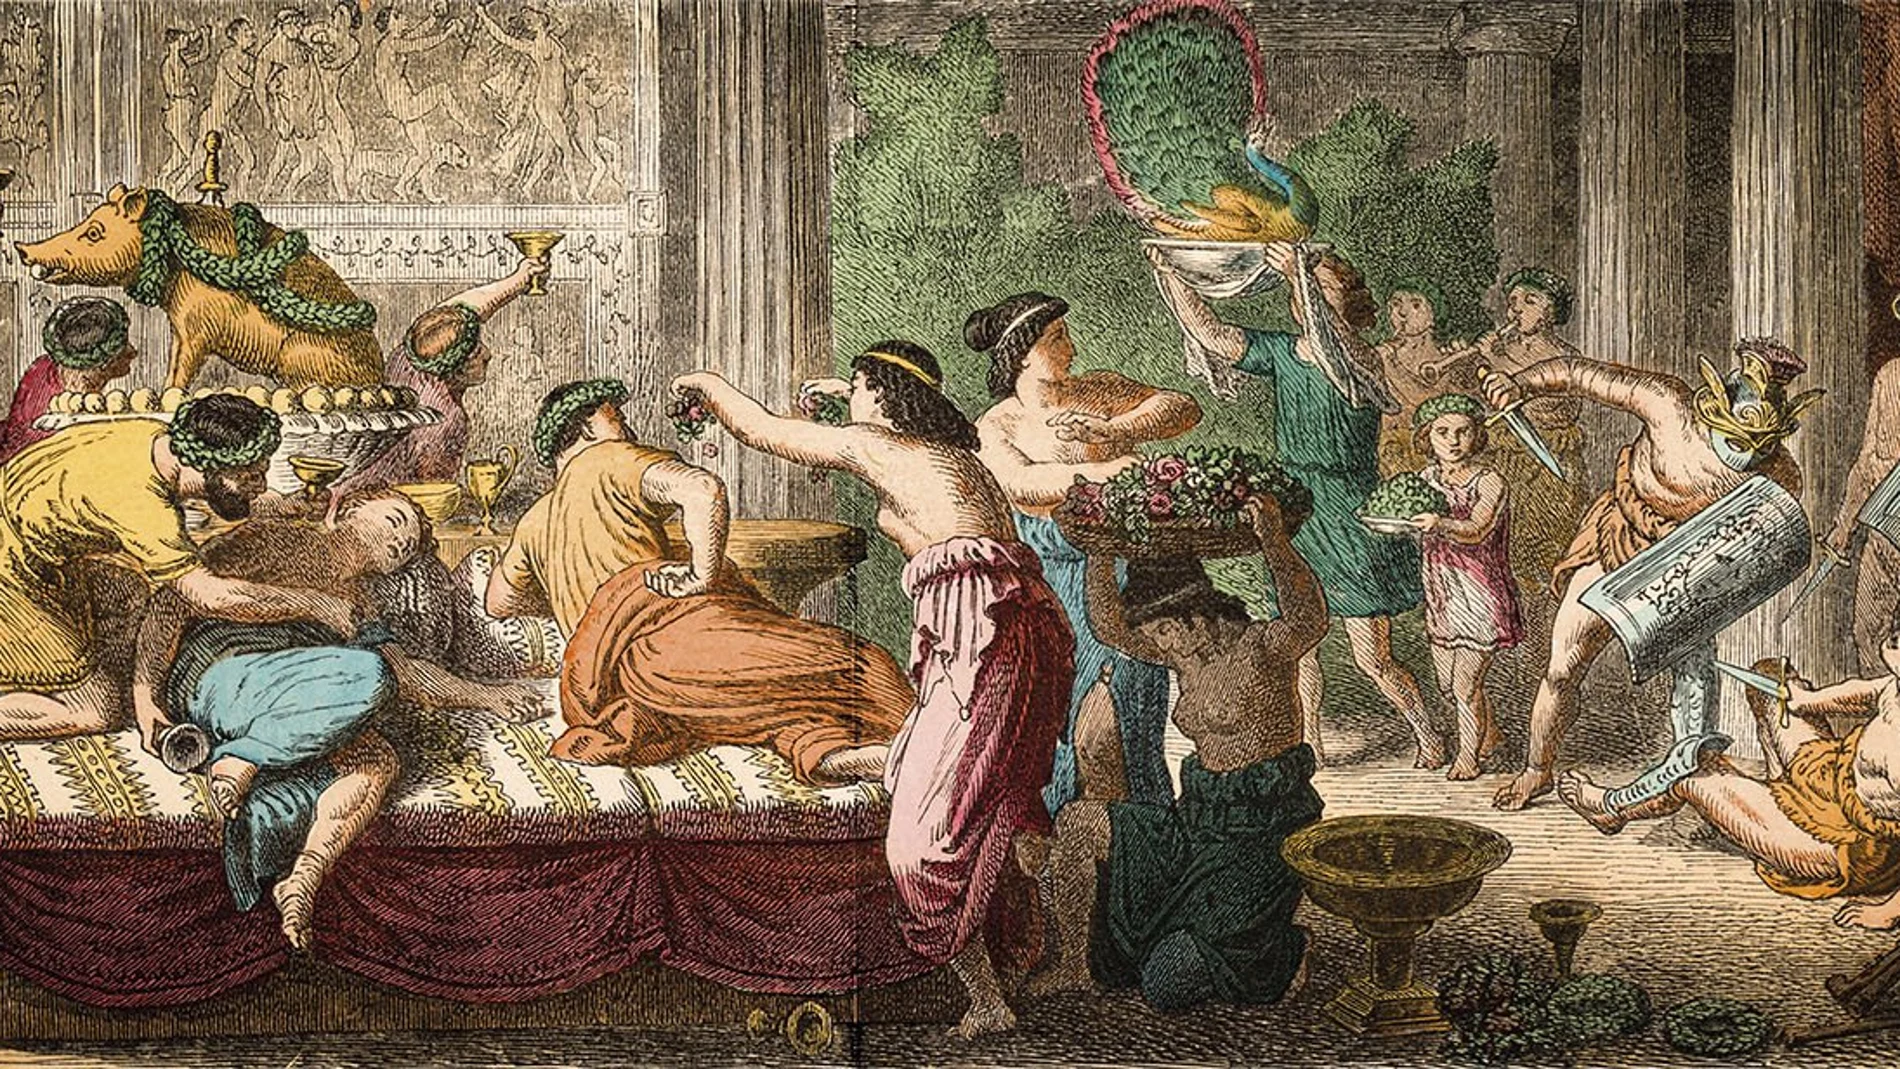 Grabado que refleja un excesivo banquete en la época romana